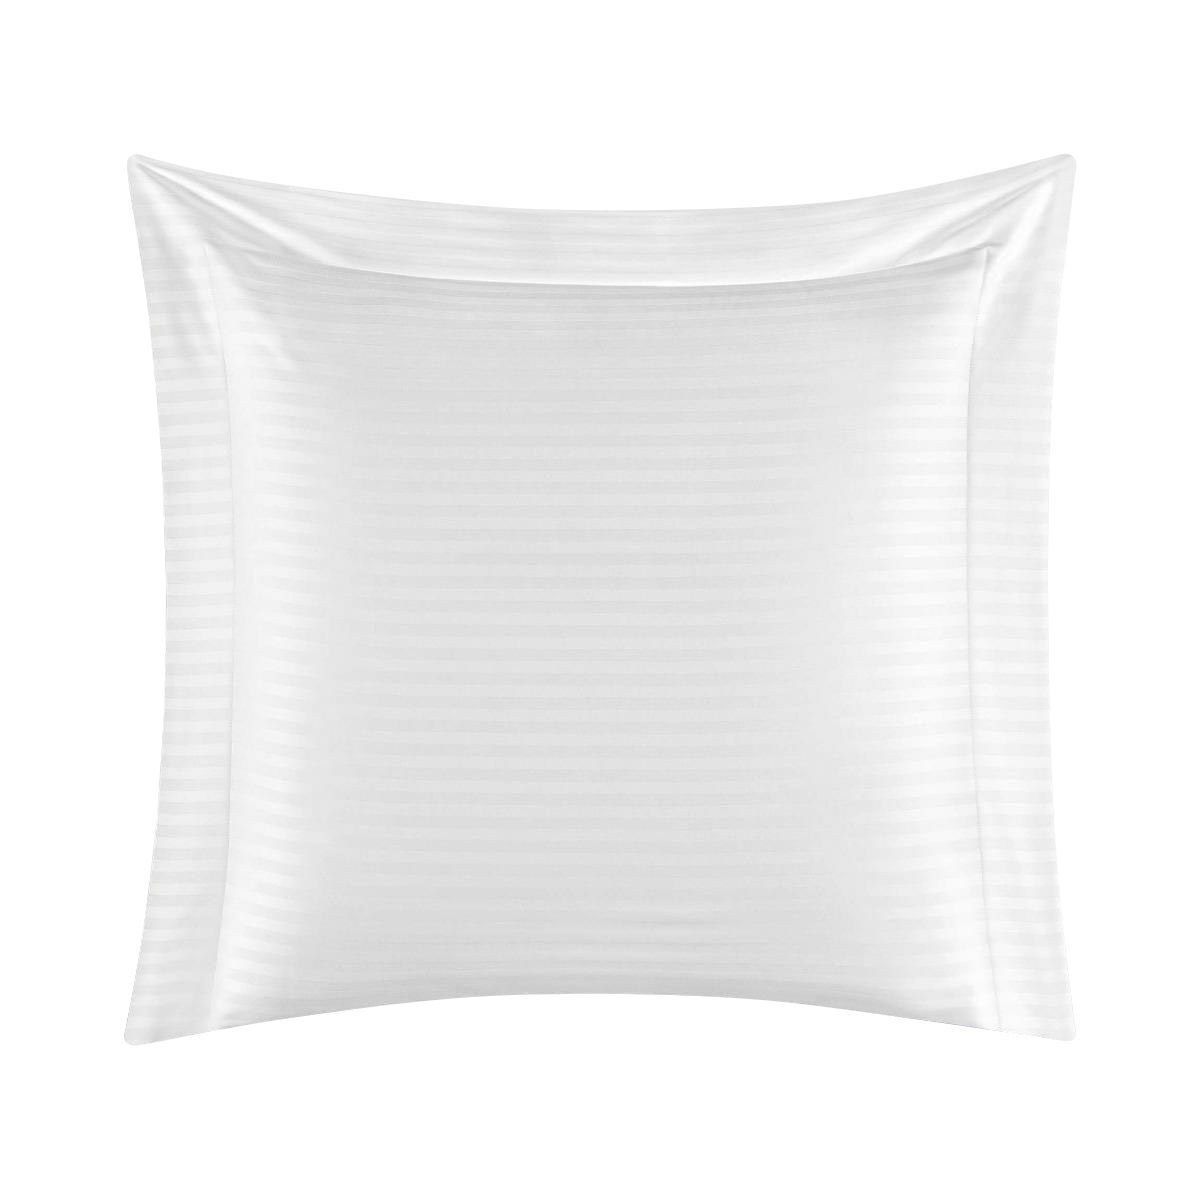 Комплект постельного белья Togas Кирос Двуспальный кинг сайз белый, размер Двуспальный евро - фото 8